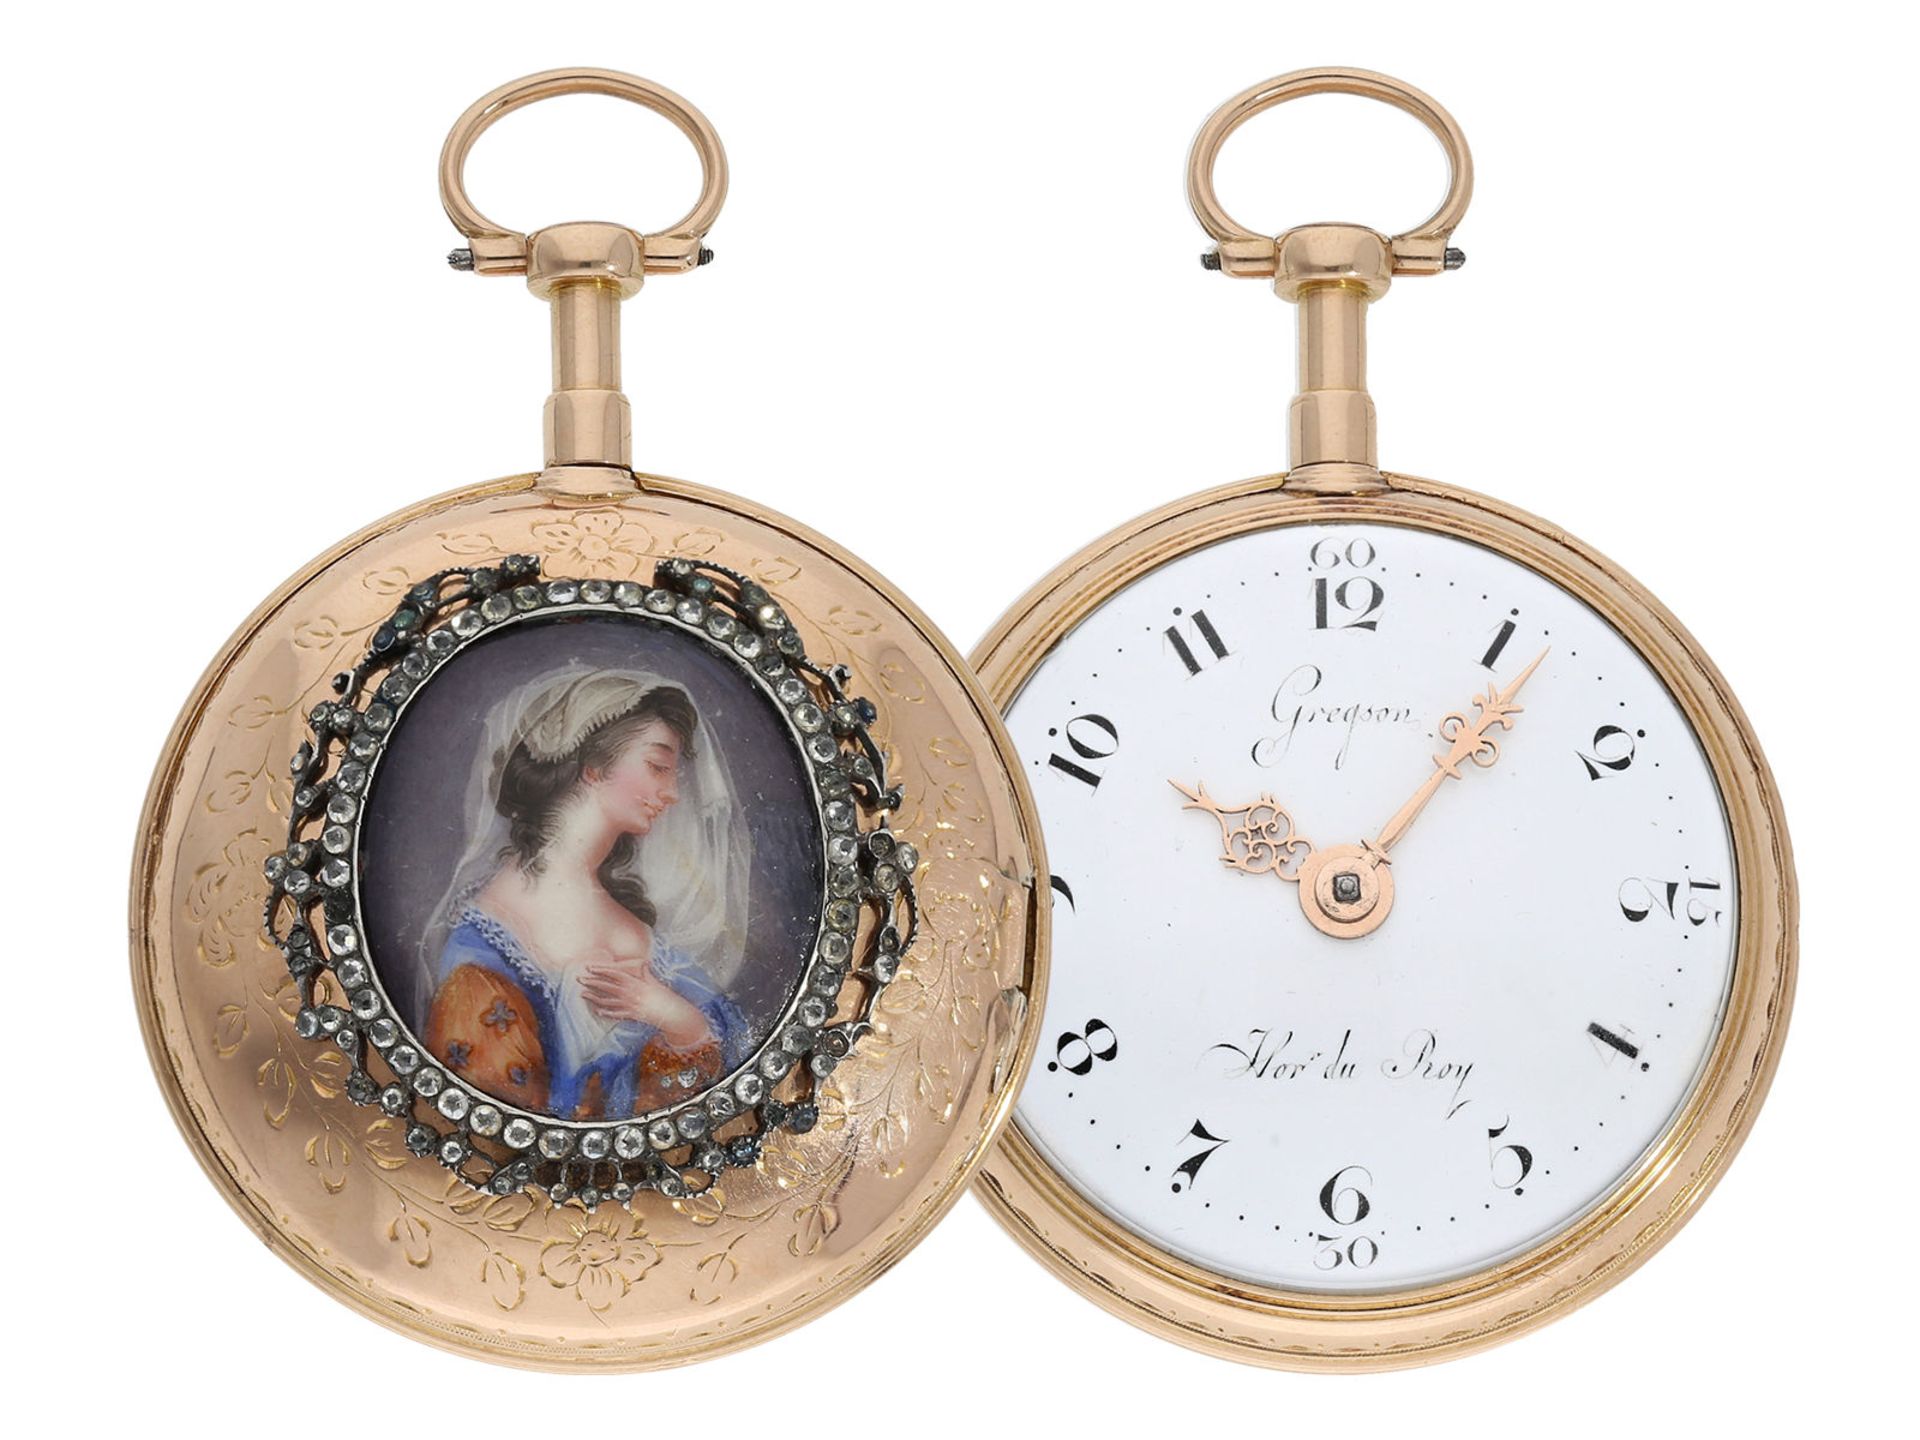 Taschenuhr: außergewöhnliche Taschenuhr mit Emaille-Malerei, Königlicher Uhrmacher Gregson Paris, No